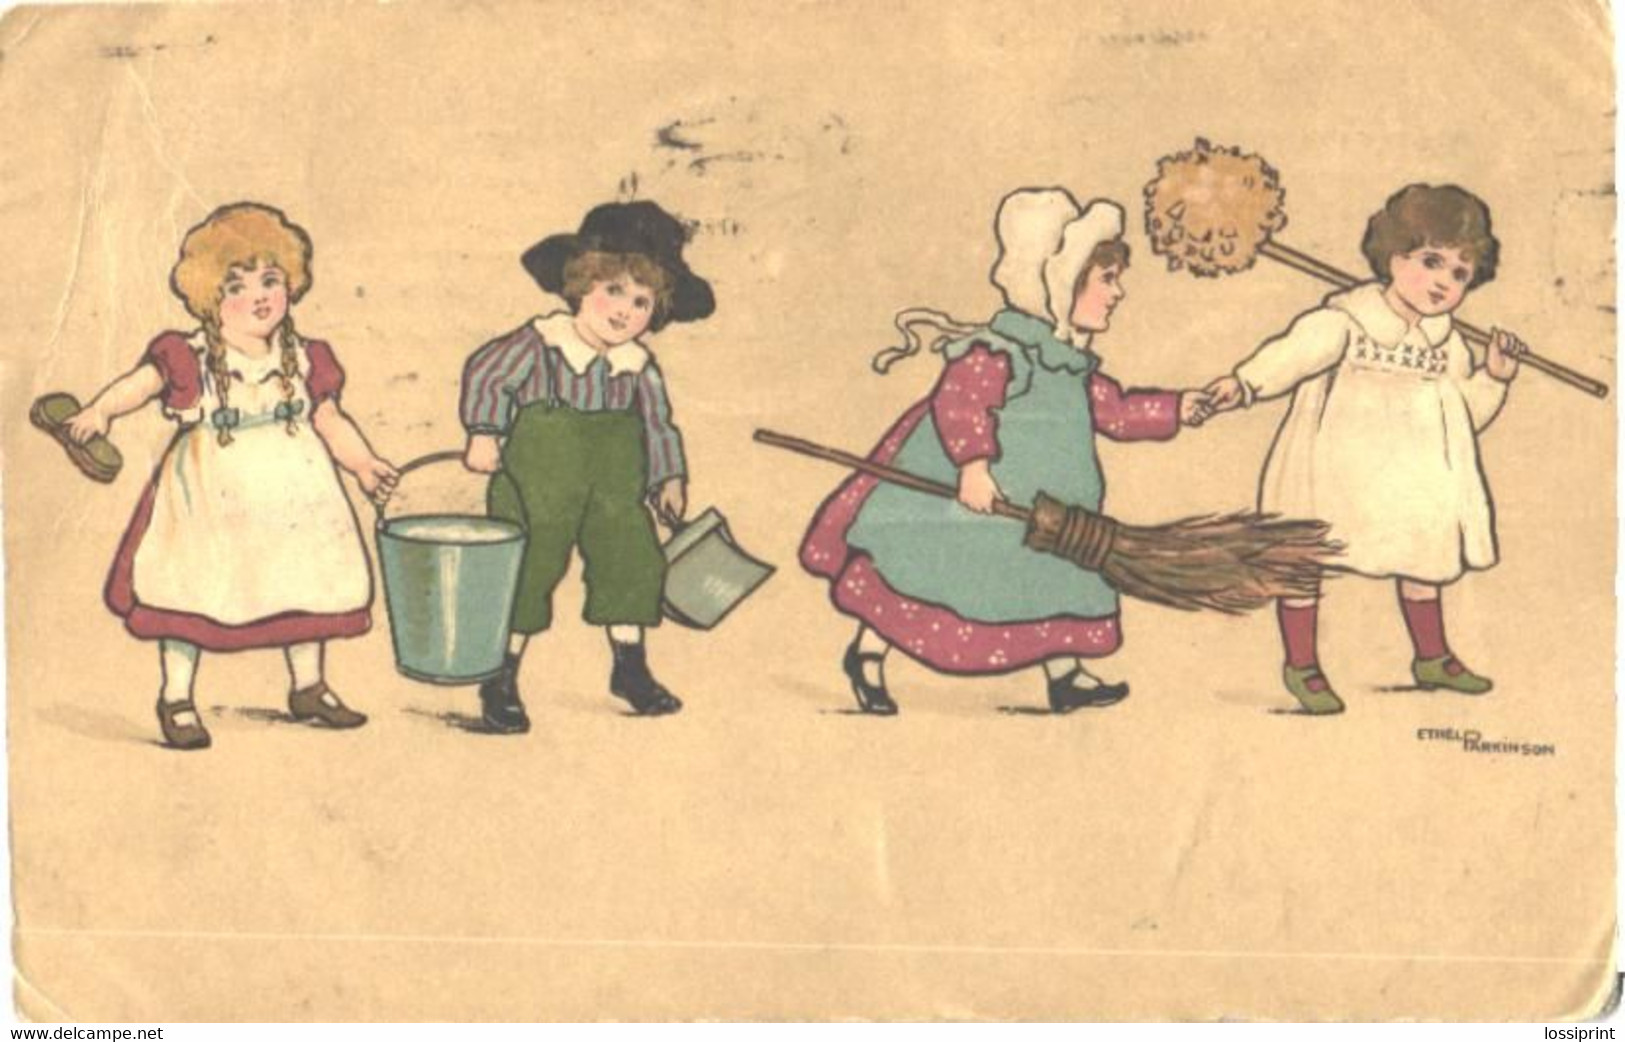 Ethel Parkinson:Kids With Barrel, Broom, Pre 1916 - Parkinson, Ethel